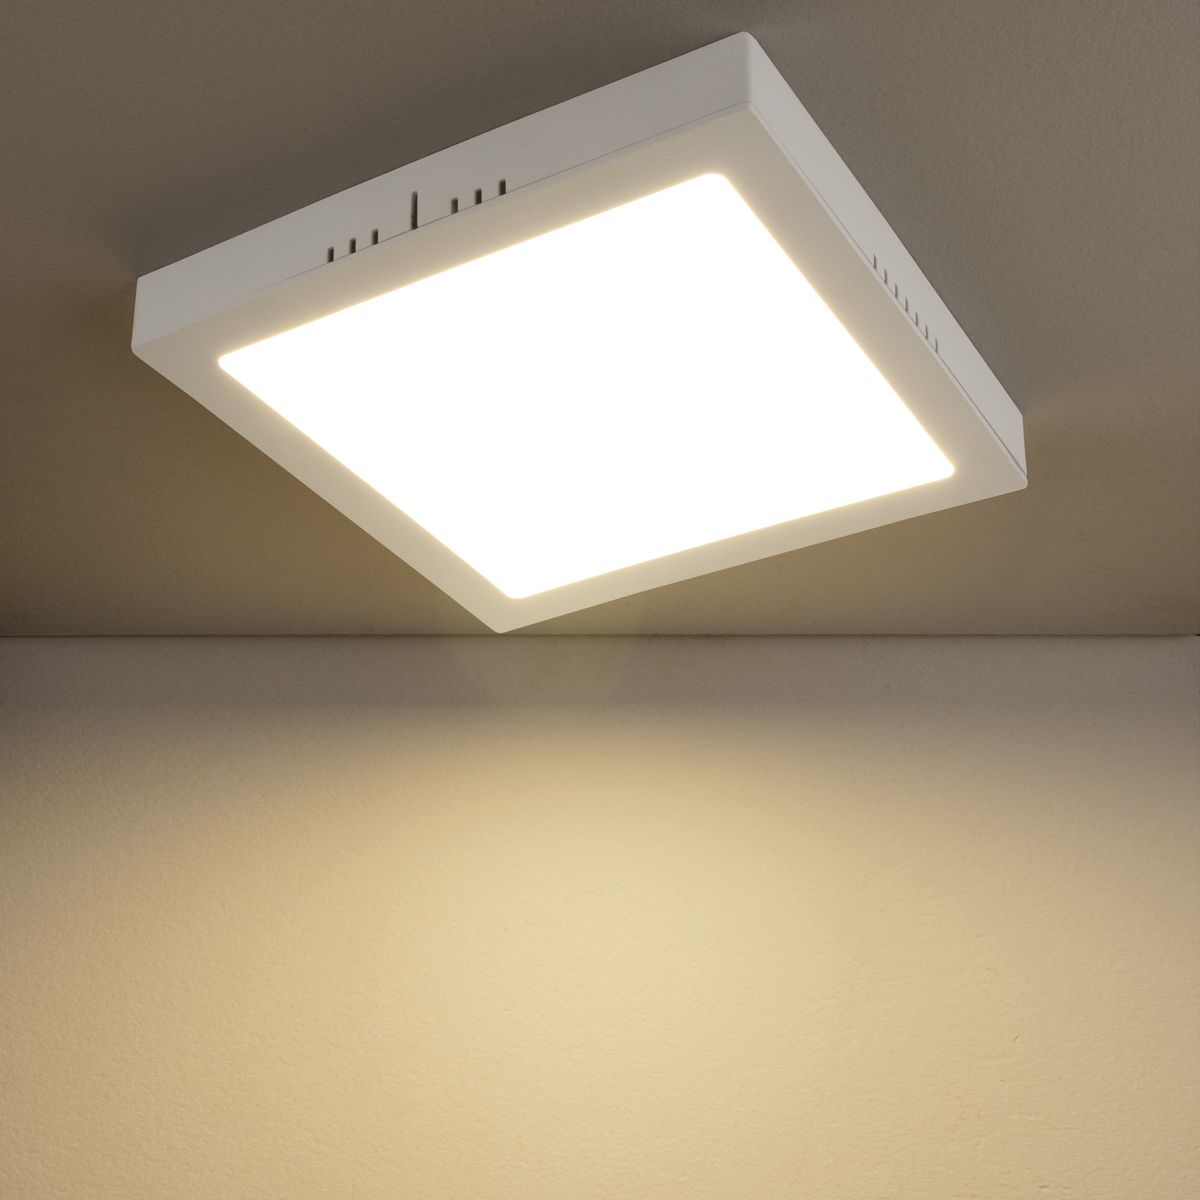 Универсальный накладной/встраиваемый потолочный светодиодный светильник DLS020 24W 4200K